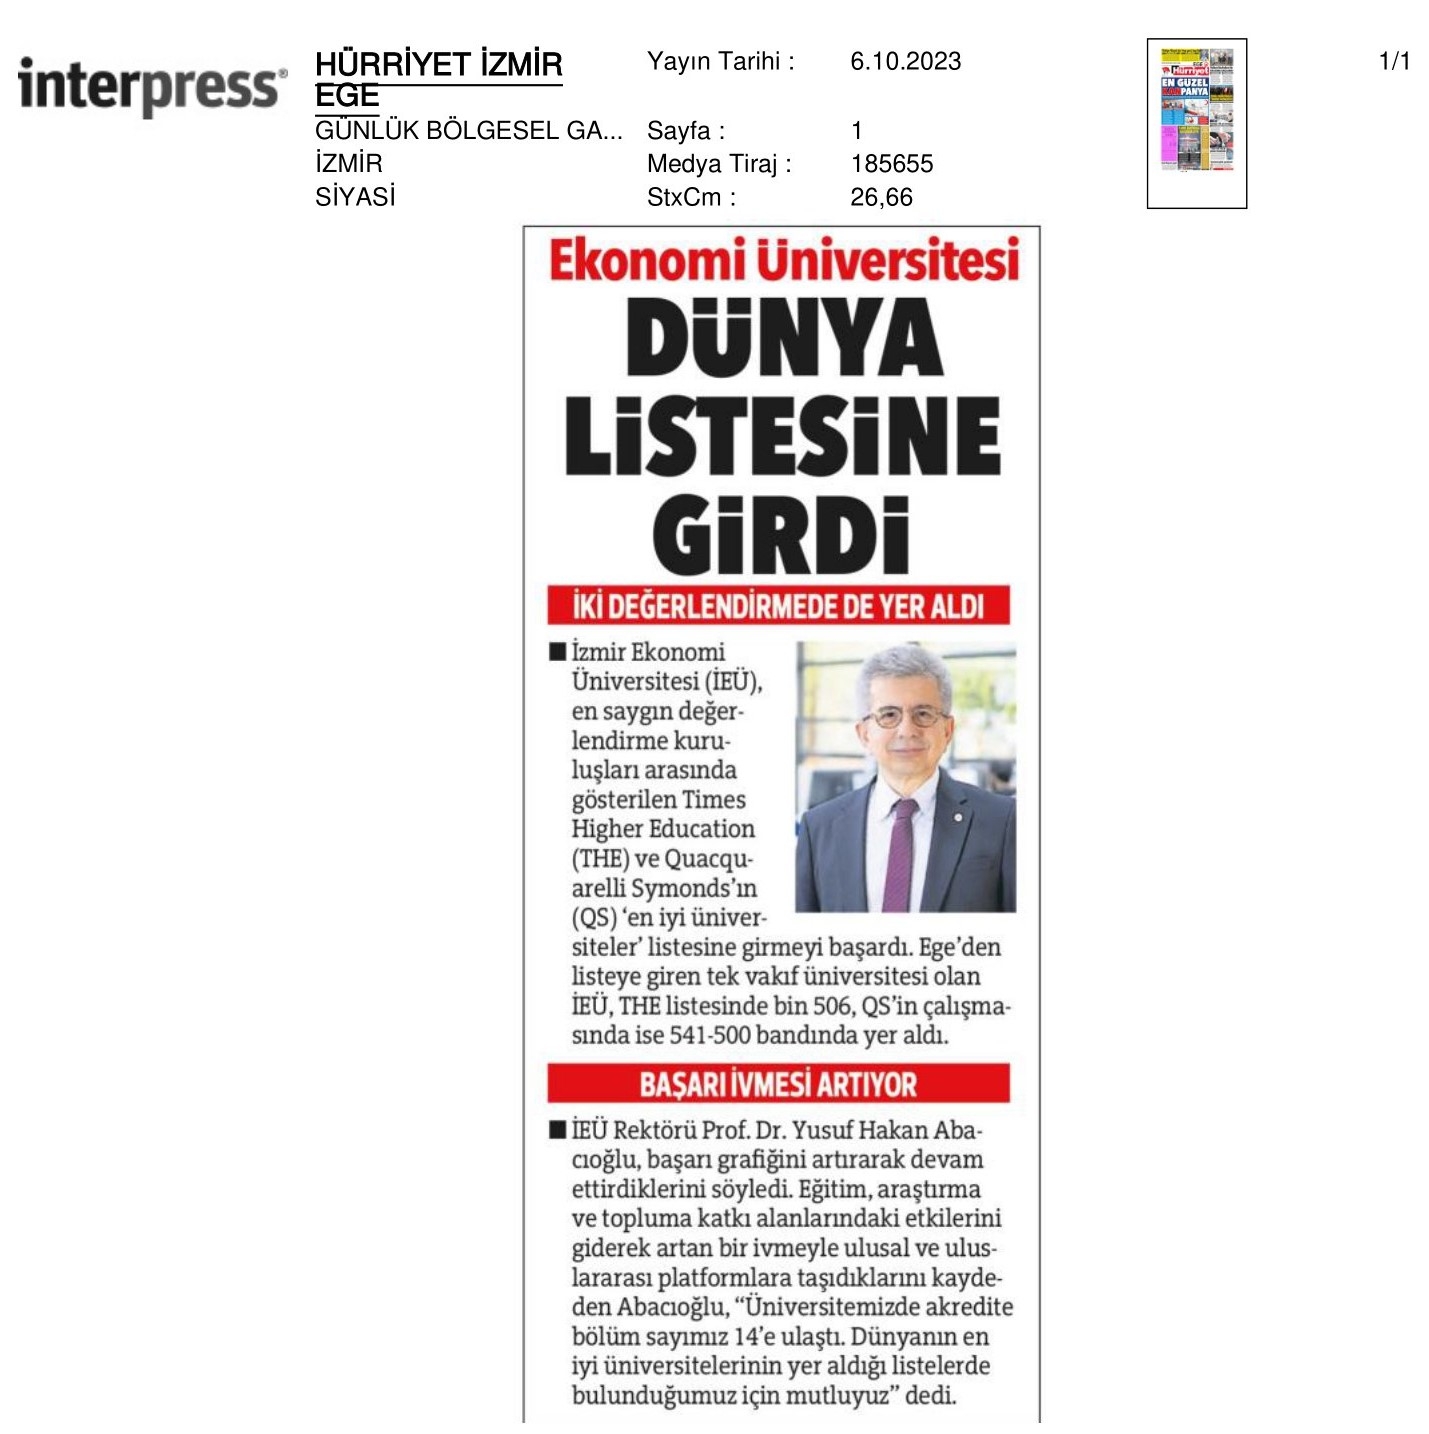 İzmir Ekonomi ‘Dünya Listesi'nde